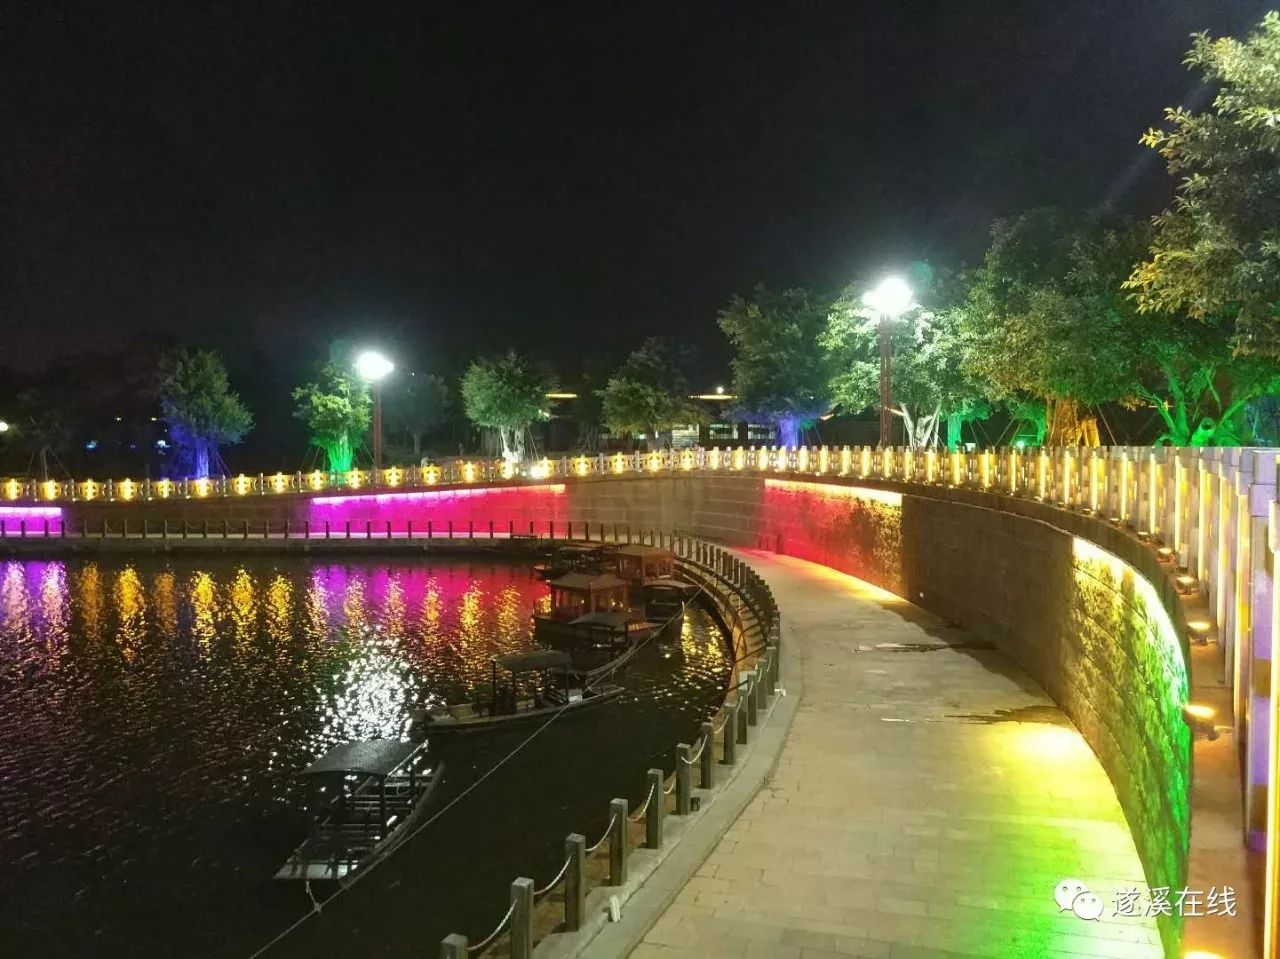 在遂溪,有一种美叫孔子文化城夜景!